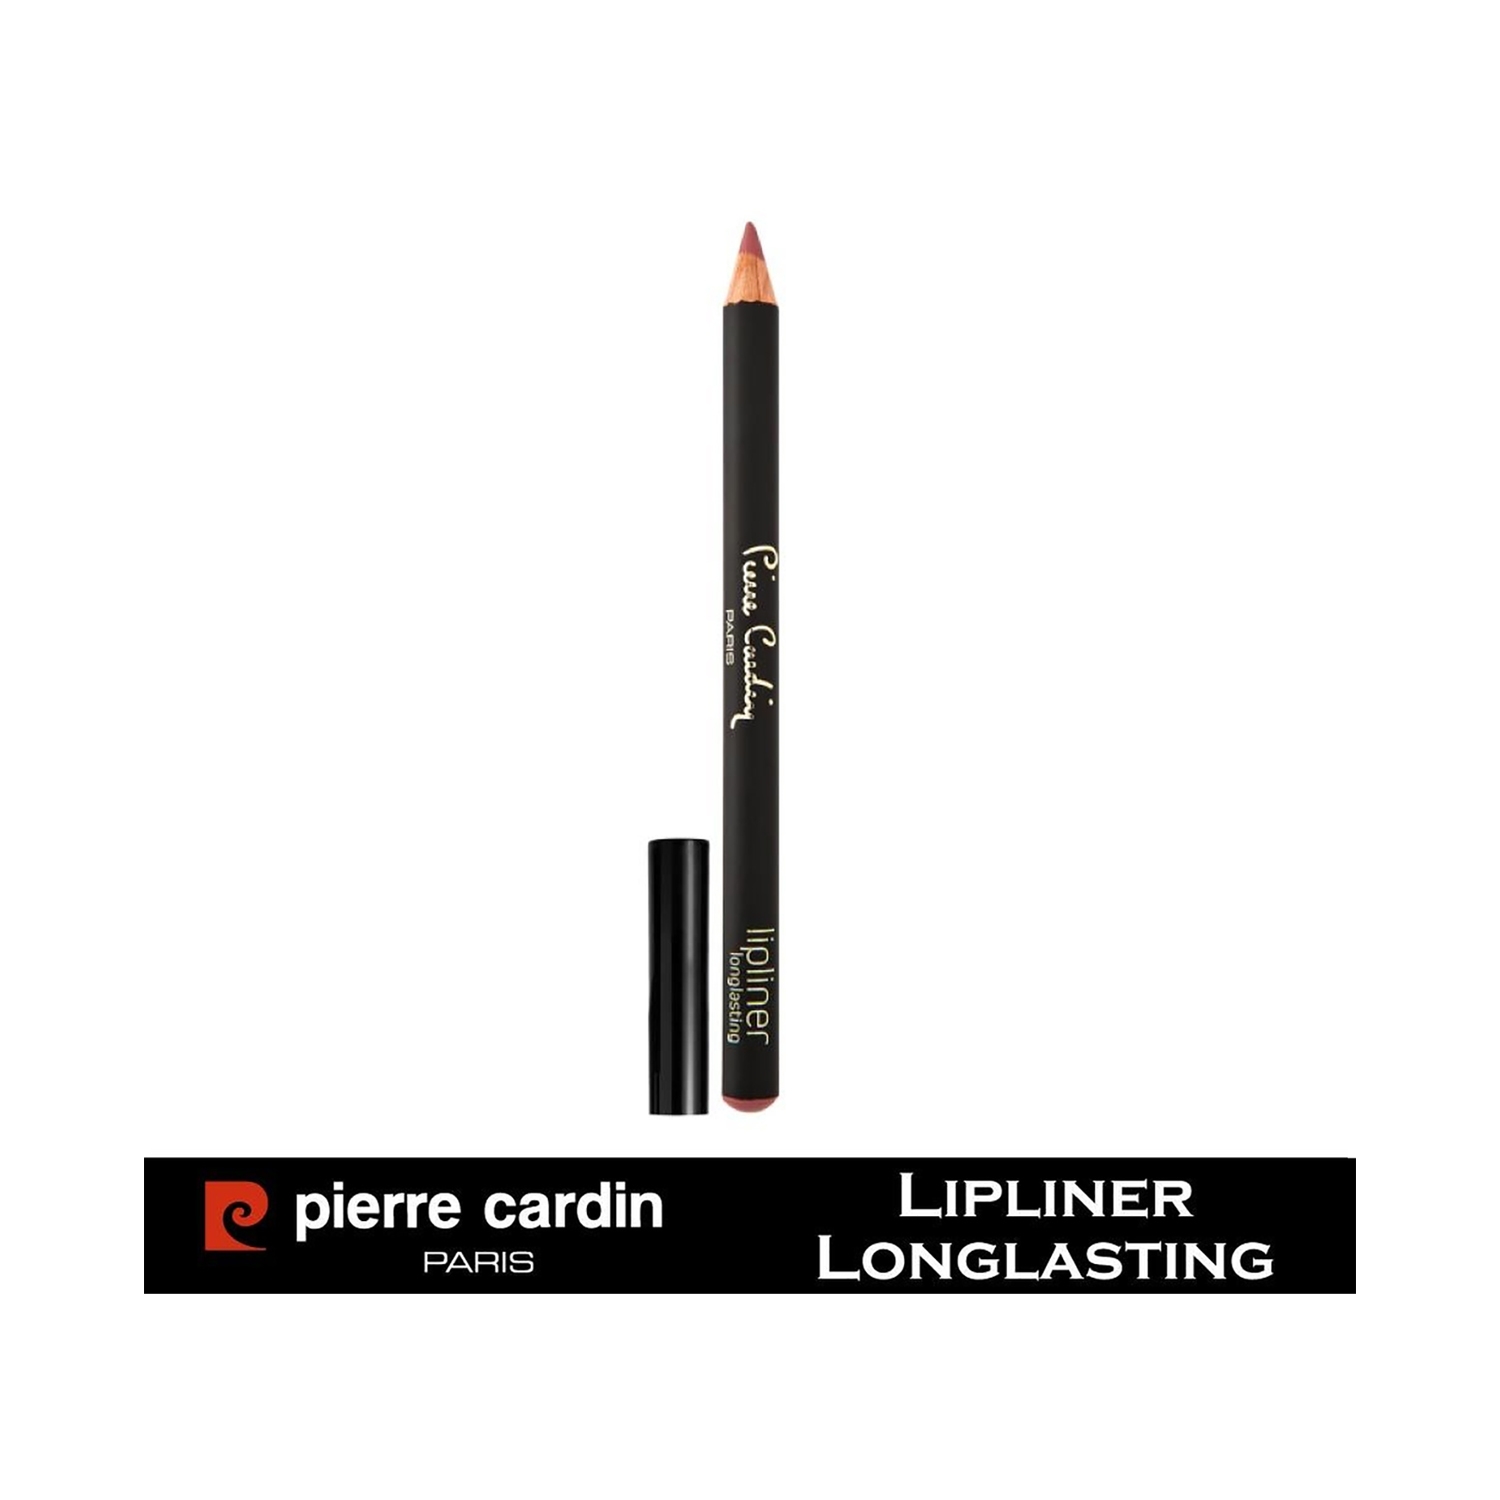 Pierre Cardin Paris | Pierre Cardin Paris Longlasting Lip Liner Pencil - 910 Sour Cherry (0.4g)